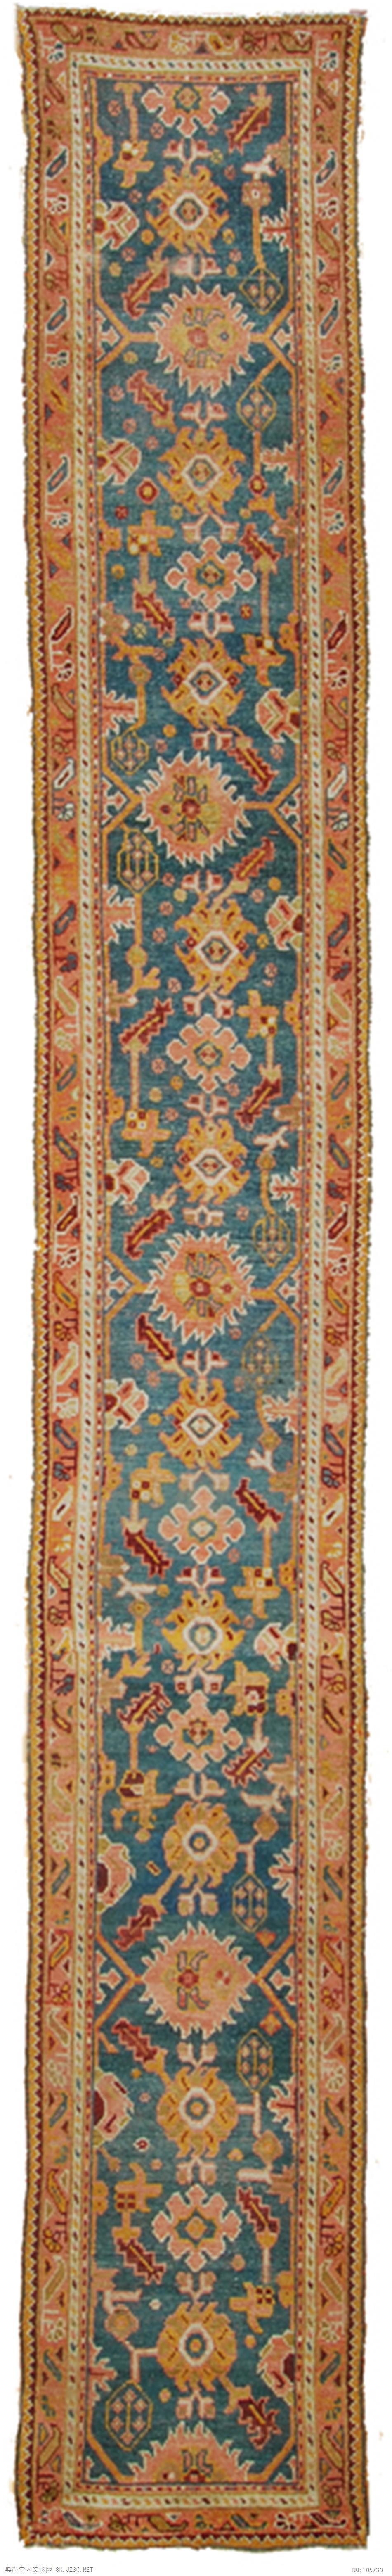 欧式风格地毯 (221)